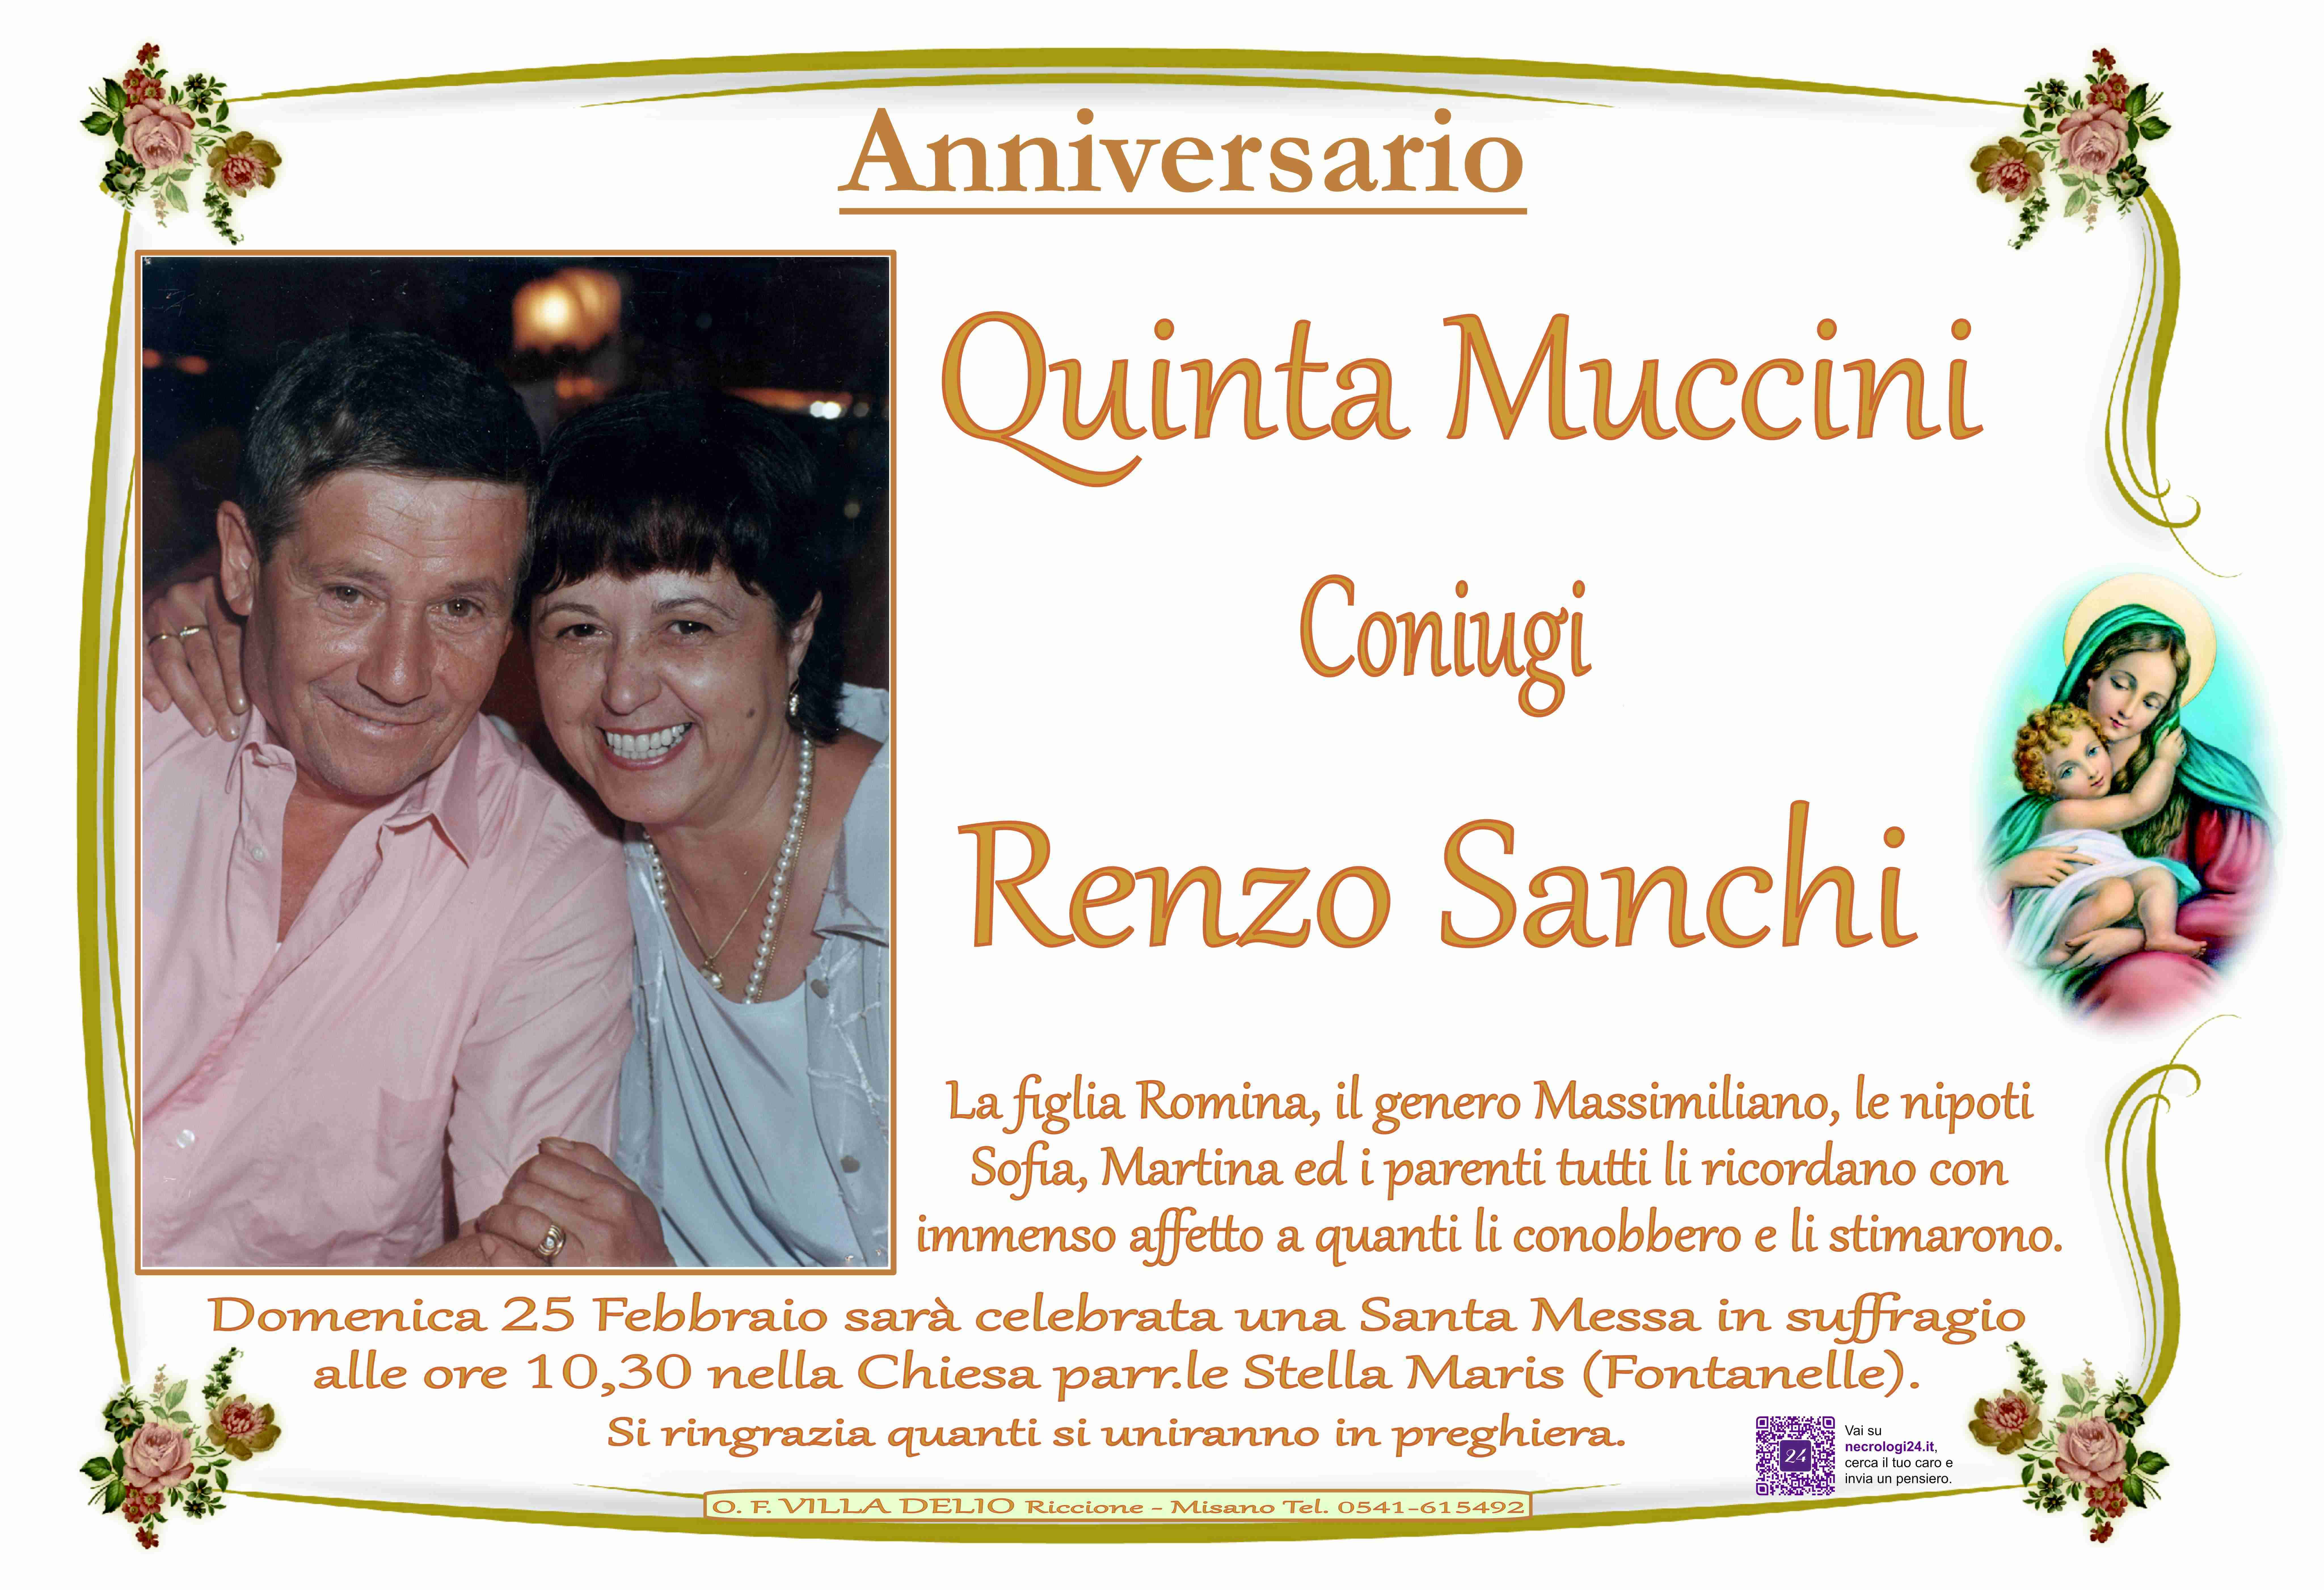 Quinta Muccini e Renzo Sanchi